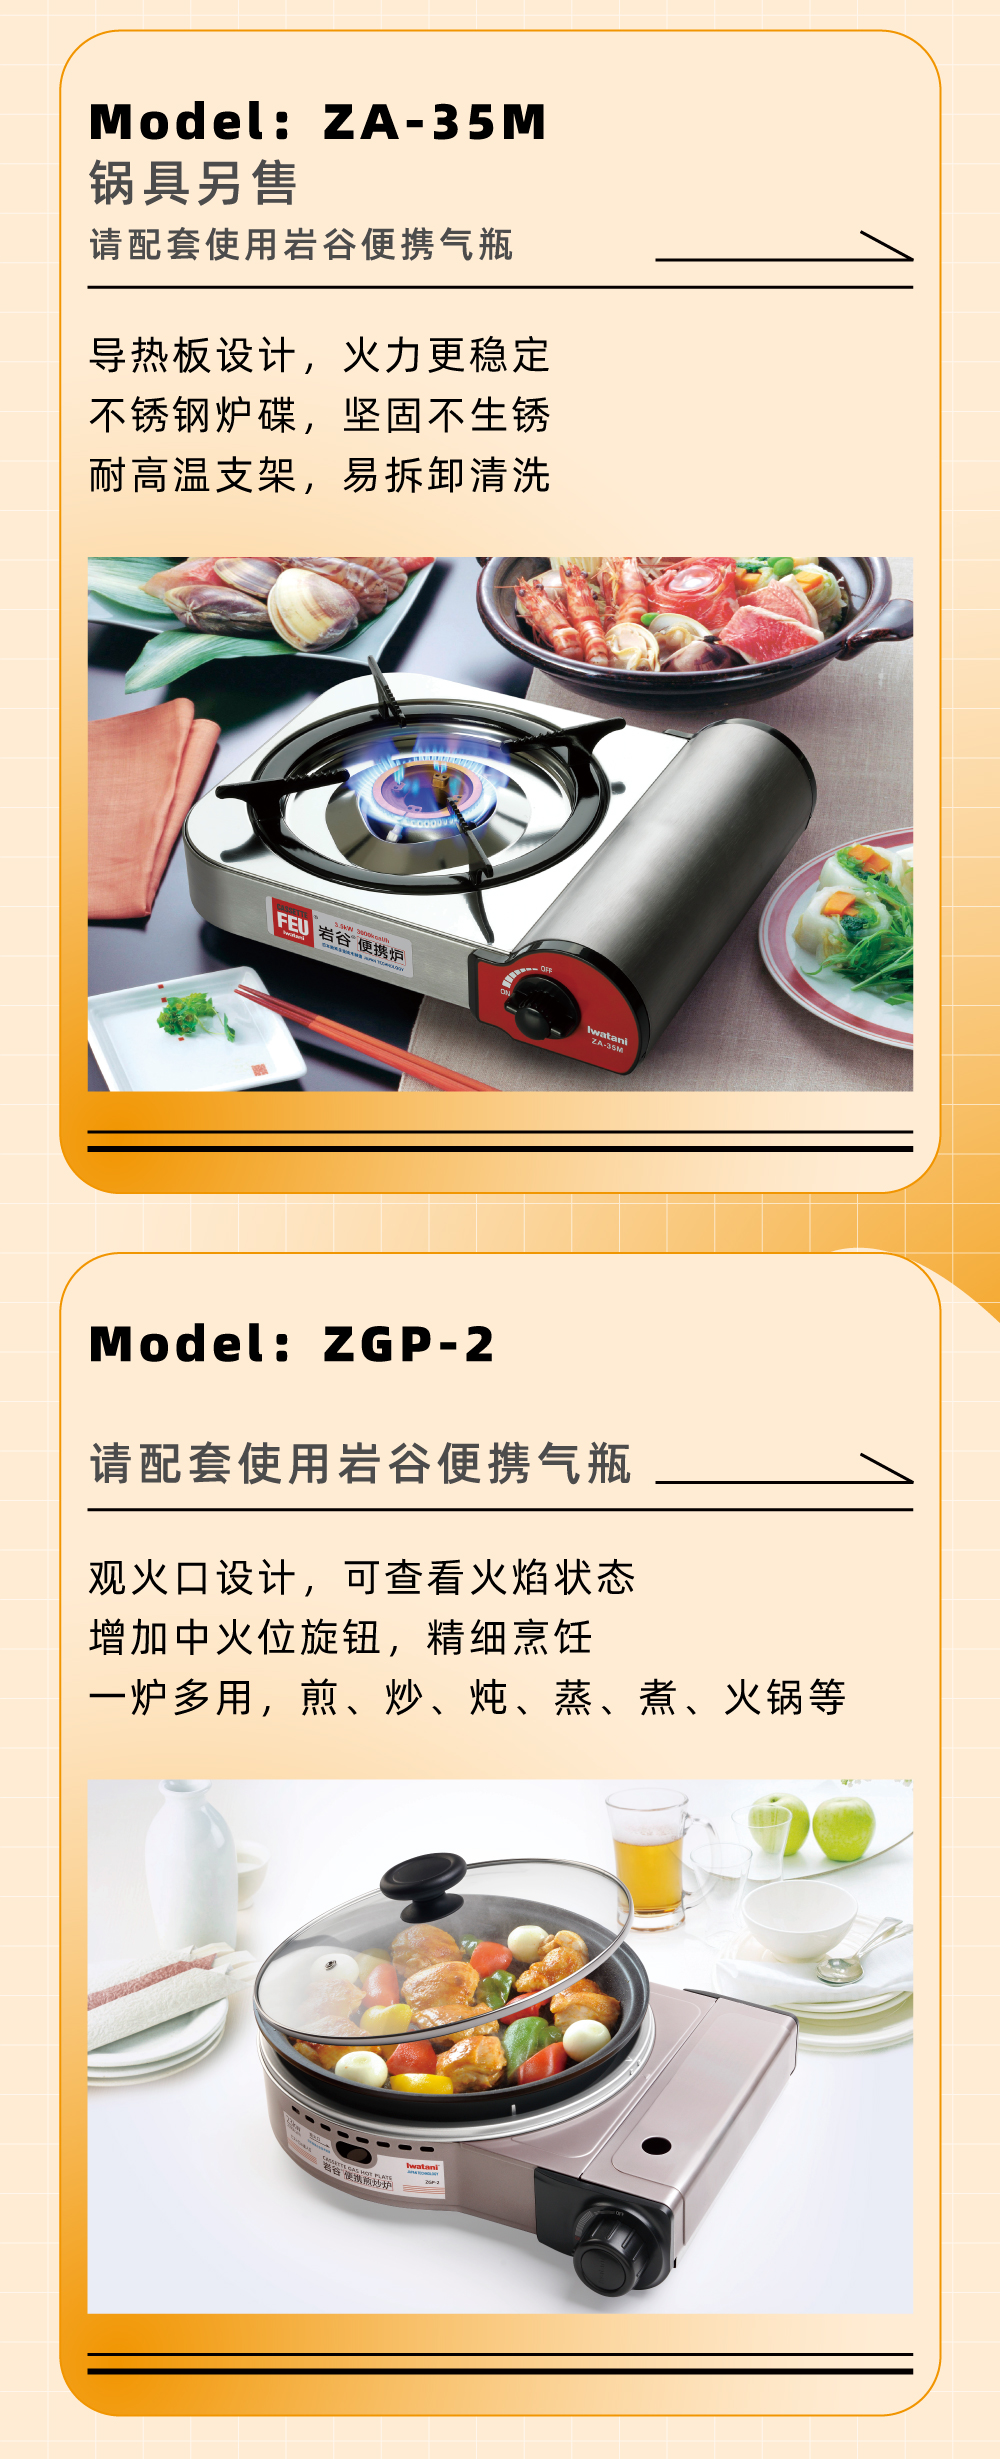 Model：ZA-35M